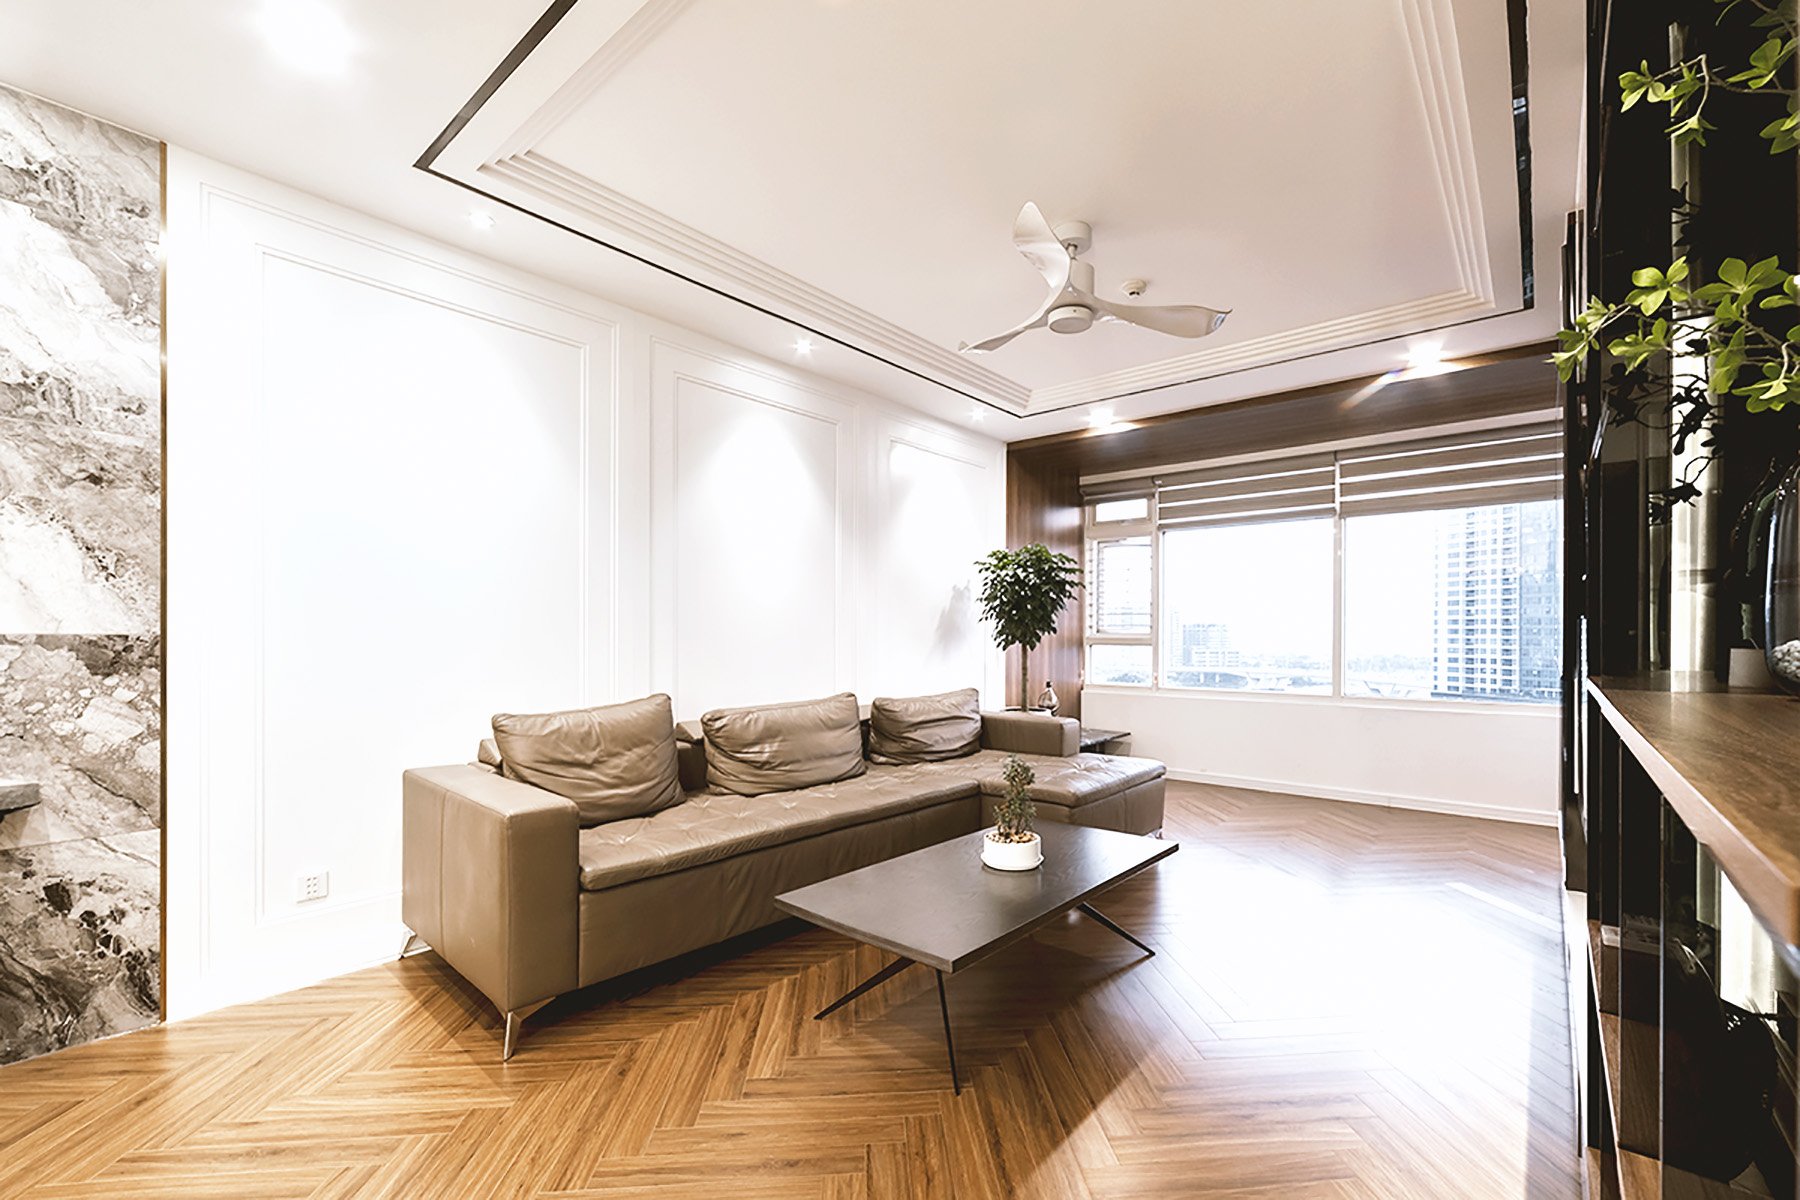 Phòng khách, phong cách Hiện đại Modern, hoàn thiện nội thất, căn hộ Saigon Pearl Topaz 2